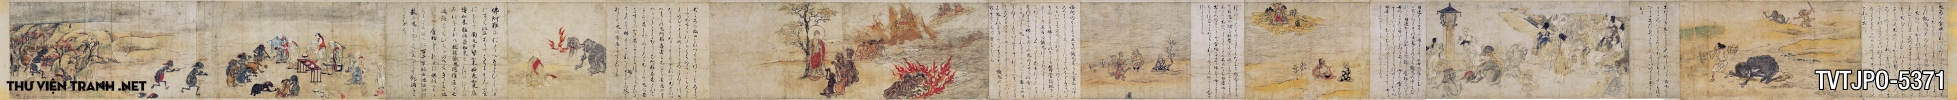 Tranh giấy cói cổ Nhật Bản: ma đói